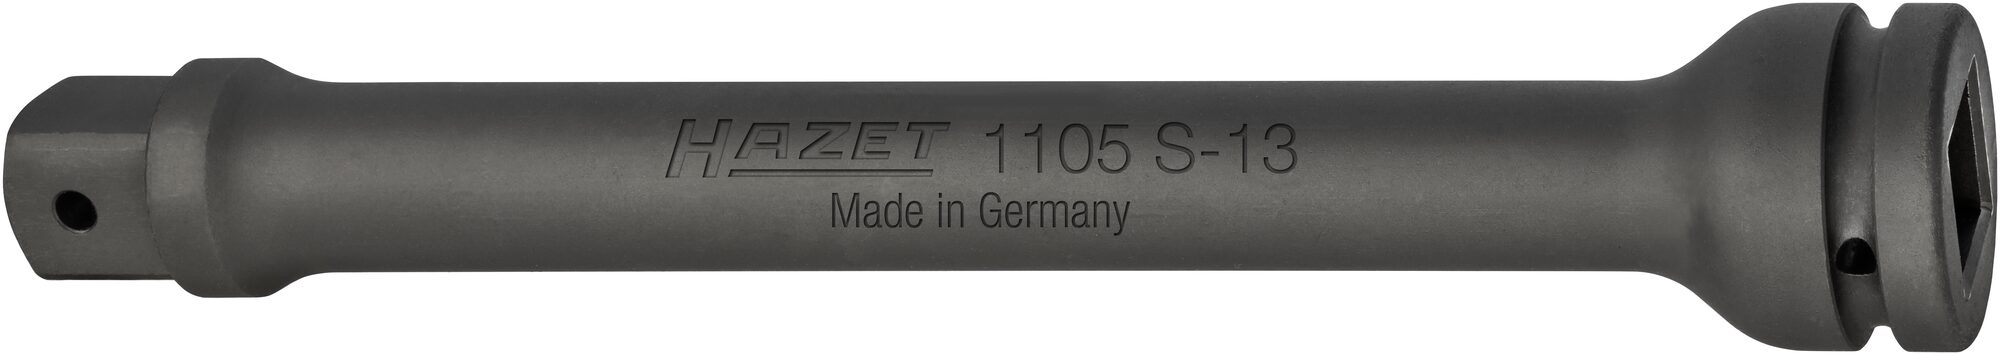 HAZET Schlag-, Maschinenschrauber Verlängerung 1105S-13 · Vierkant hohl 25 mm (1 Zoll) · Vierkant massiv 25 mm (1 Zoll)